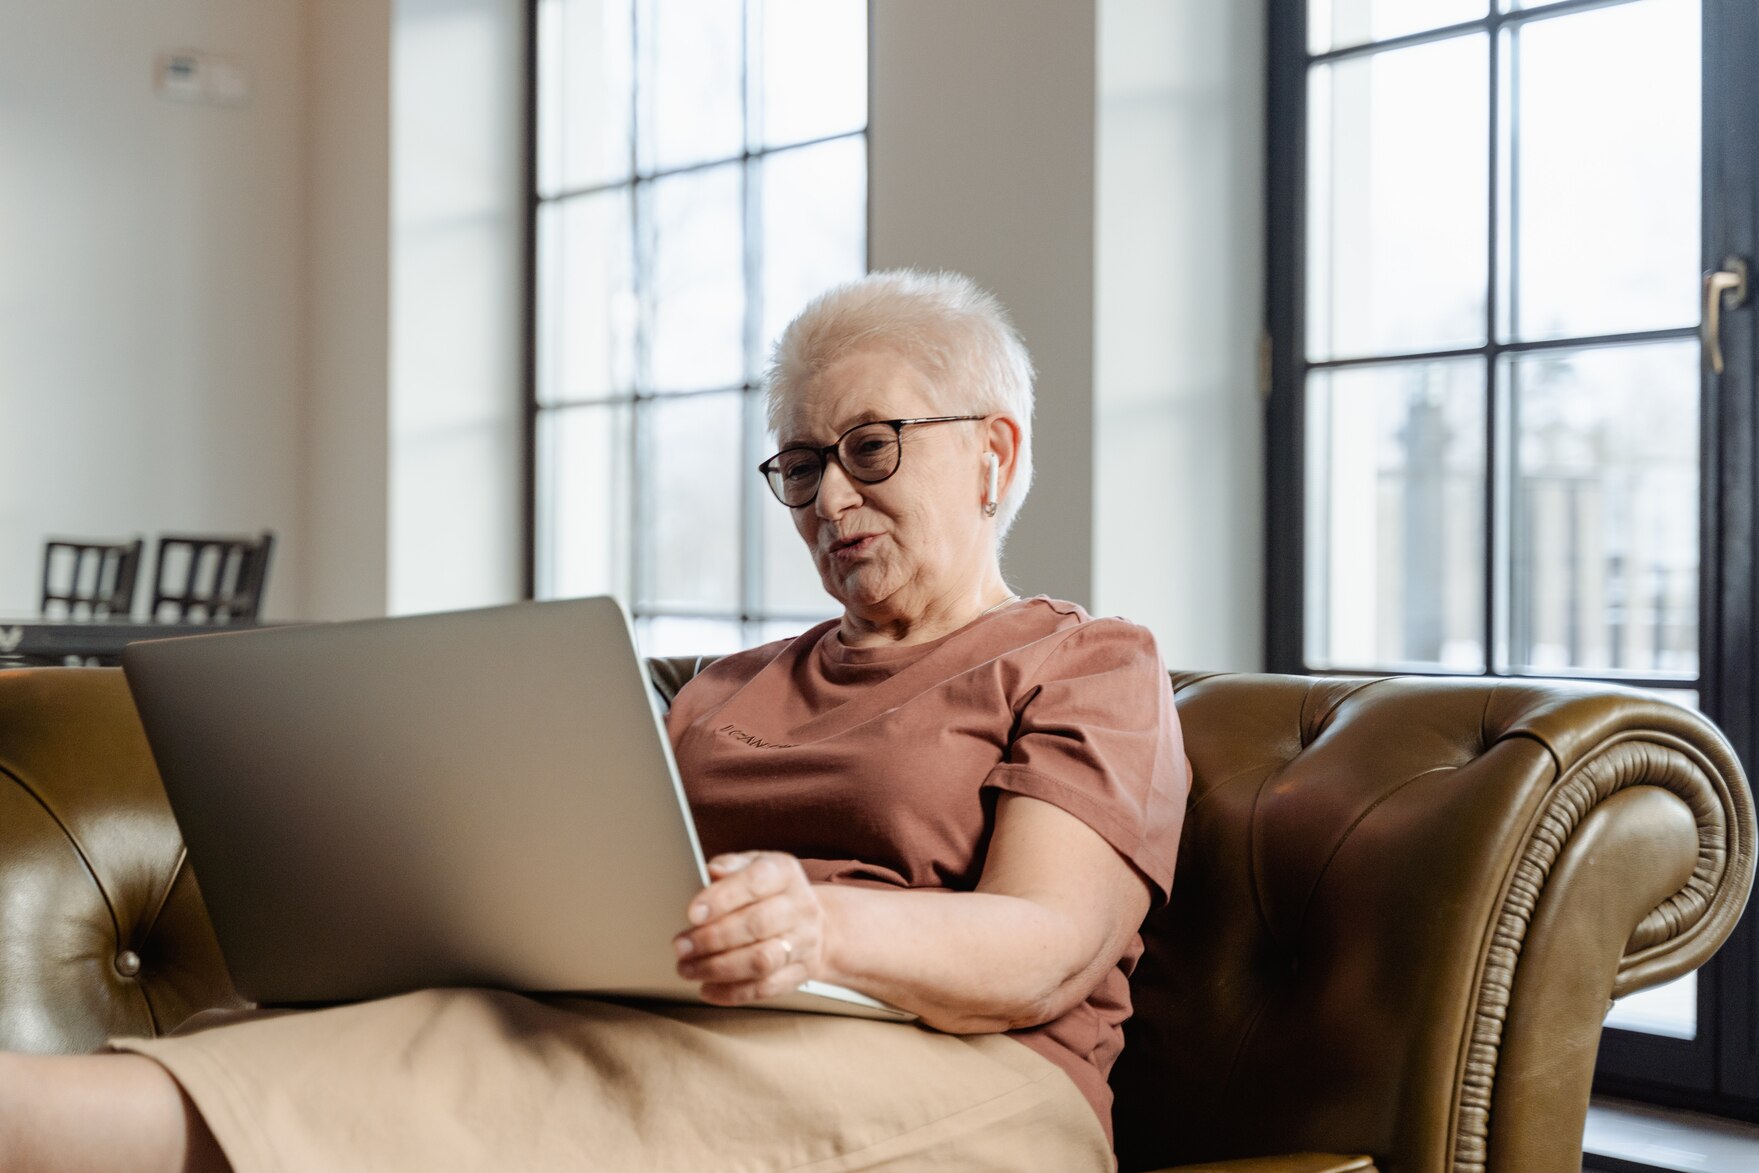 Ältere, grauhaarige Frau mit Brille, In-Ear-Kopfhörern und einem Laptop entspannt auf einem brauenen Ledersofa sitzend.